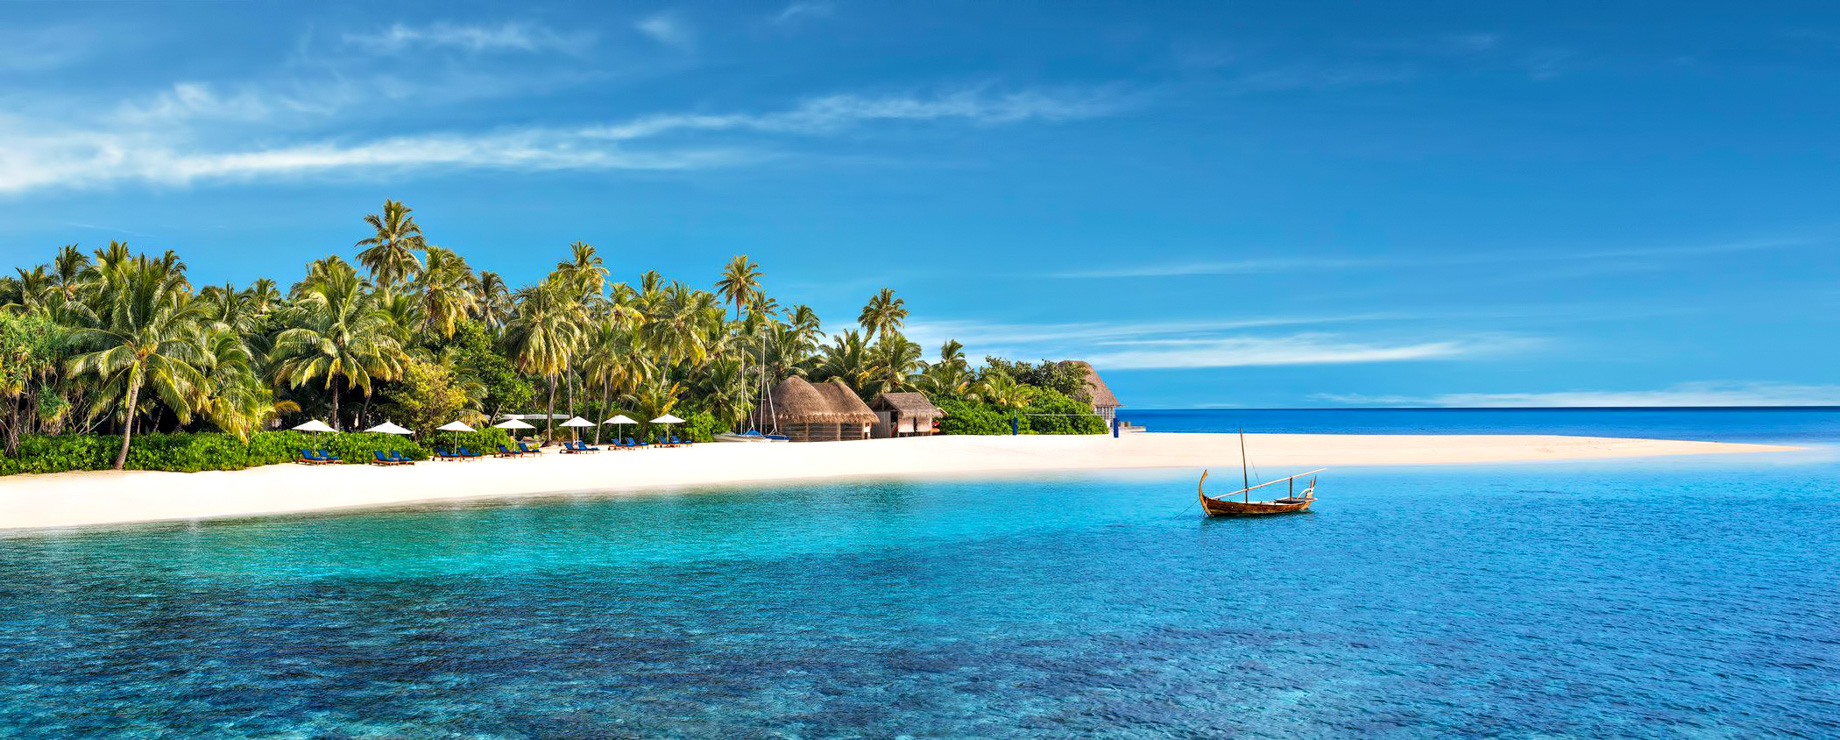 062 – W Maldives Resort – Fesdu Island, Maldives – Private Island Experience